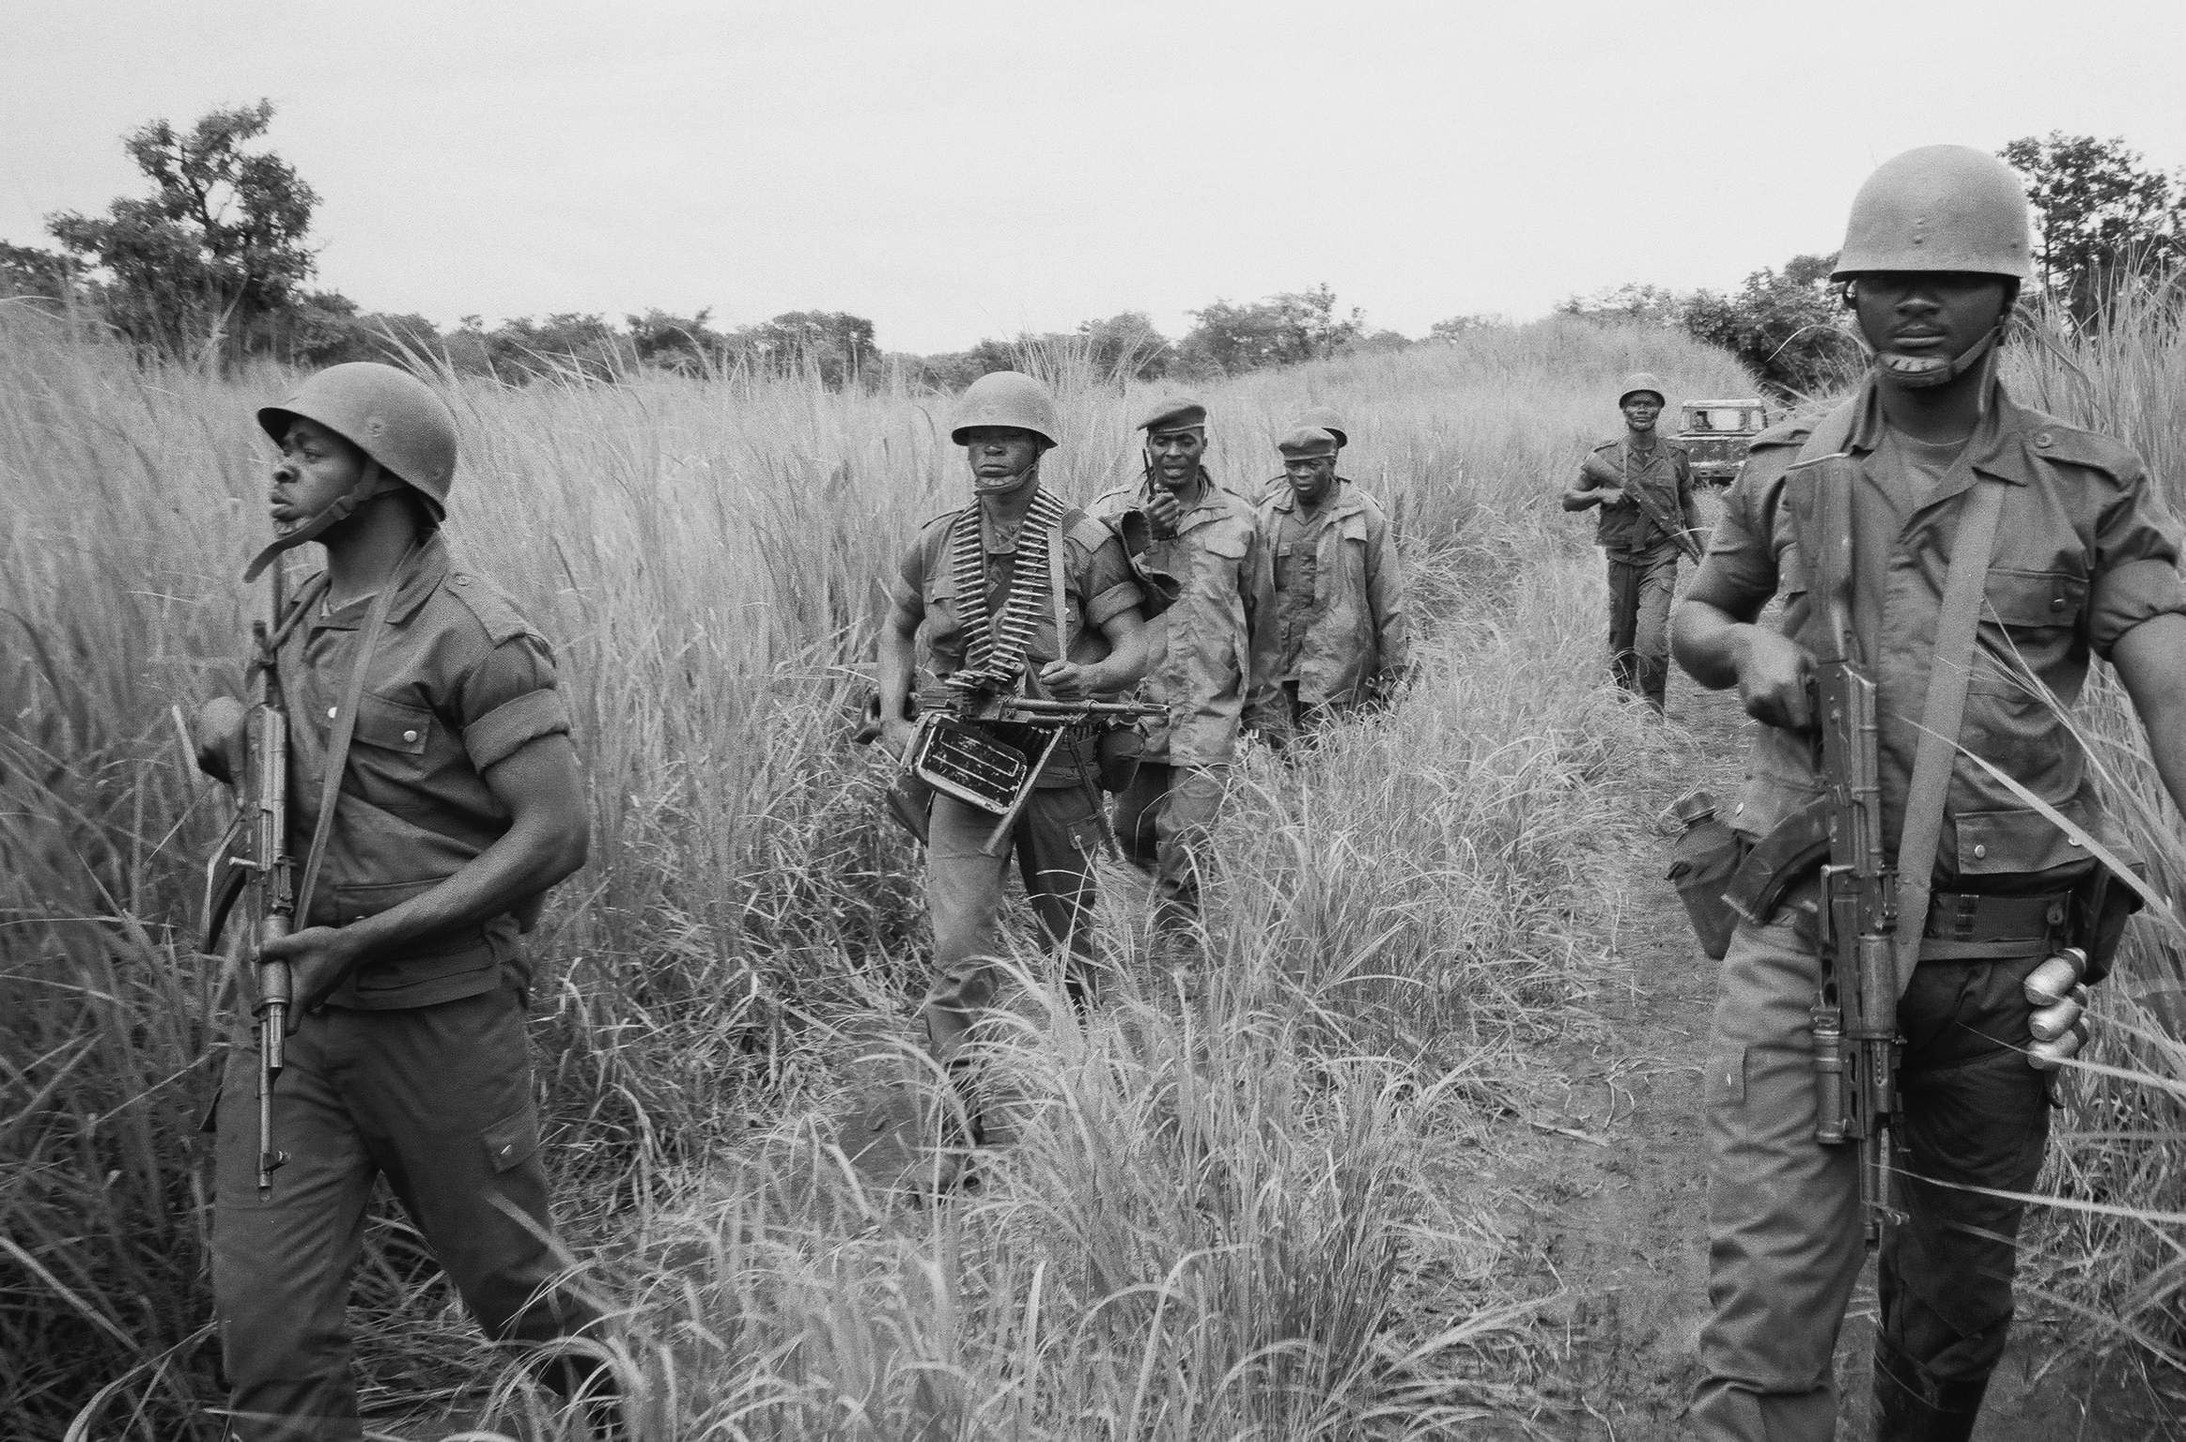 Die kongolesischen Soldaten wirken hilflos gegenüber den Rebellen, die sich hier im hohen Schilfgras verstecken. Der Kongo gehört zu den Rückzuggebieten der LRA. Erstes Ziel der „Widerstandsarmee des Herrn“ ist es, die Regierung in Uganda zu stürzen und dort einen „moralisch reinen“ Gottesstaat zu errichten.